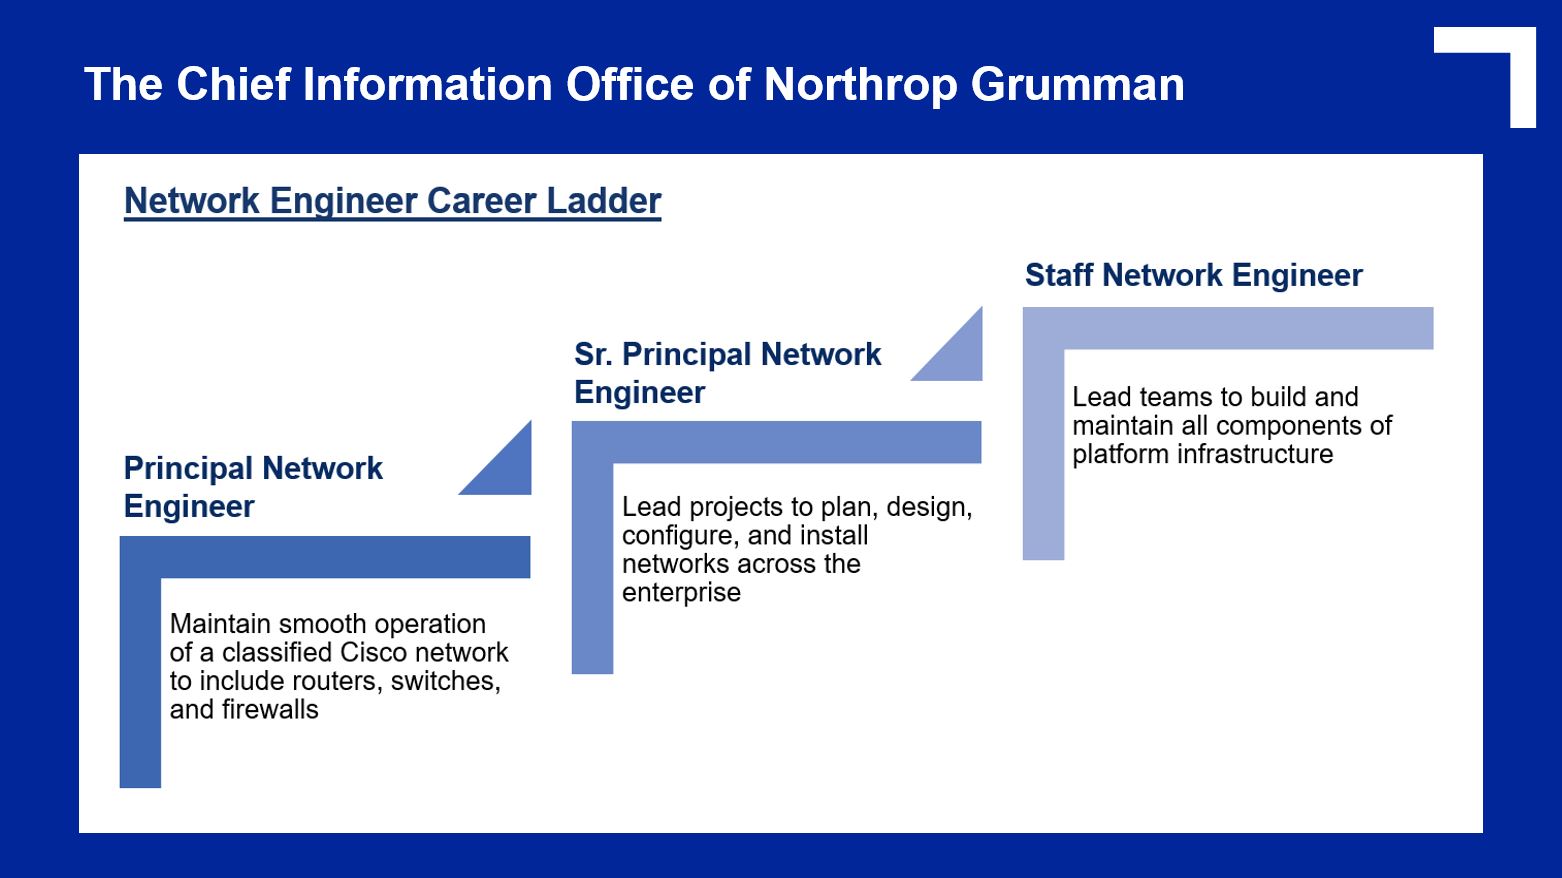 Network Engineer Career Ladder